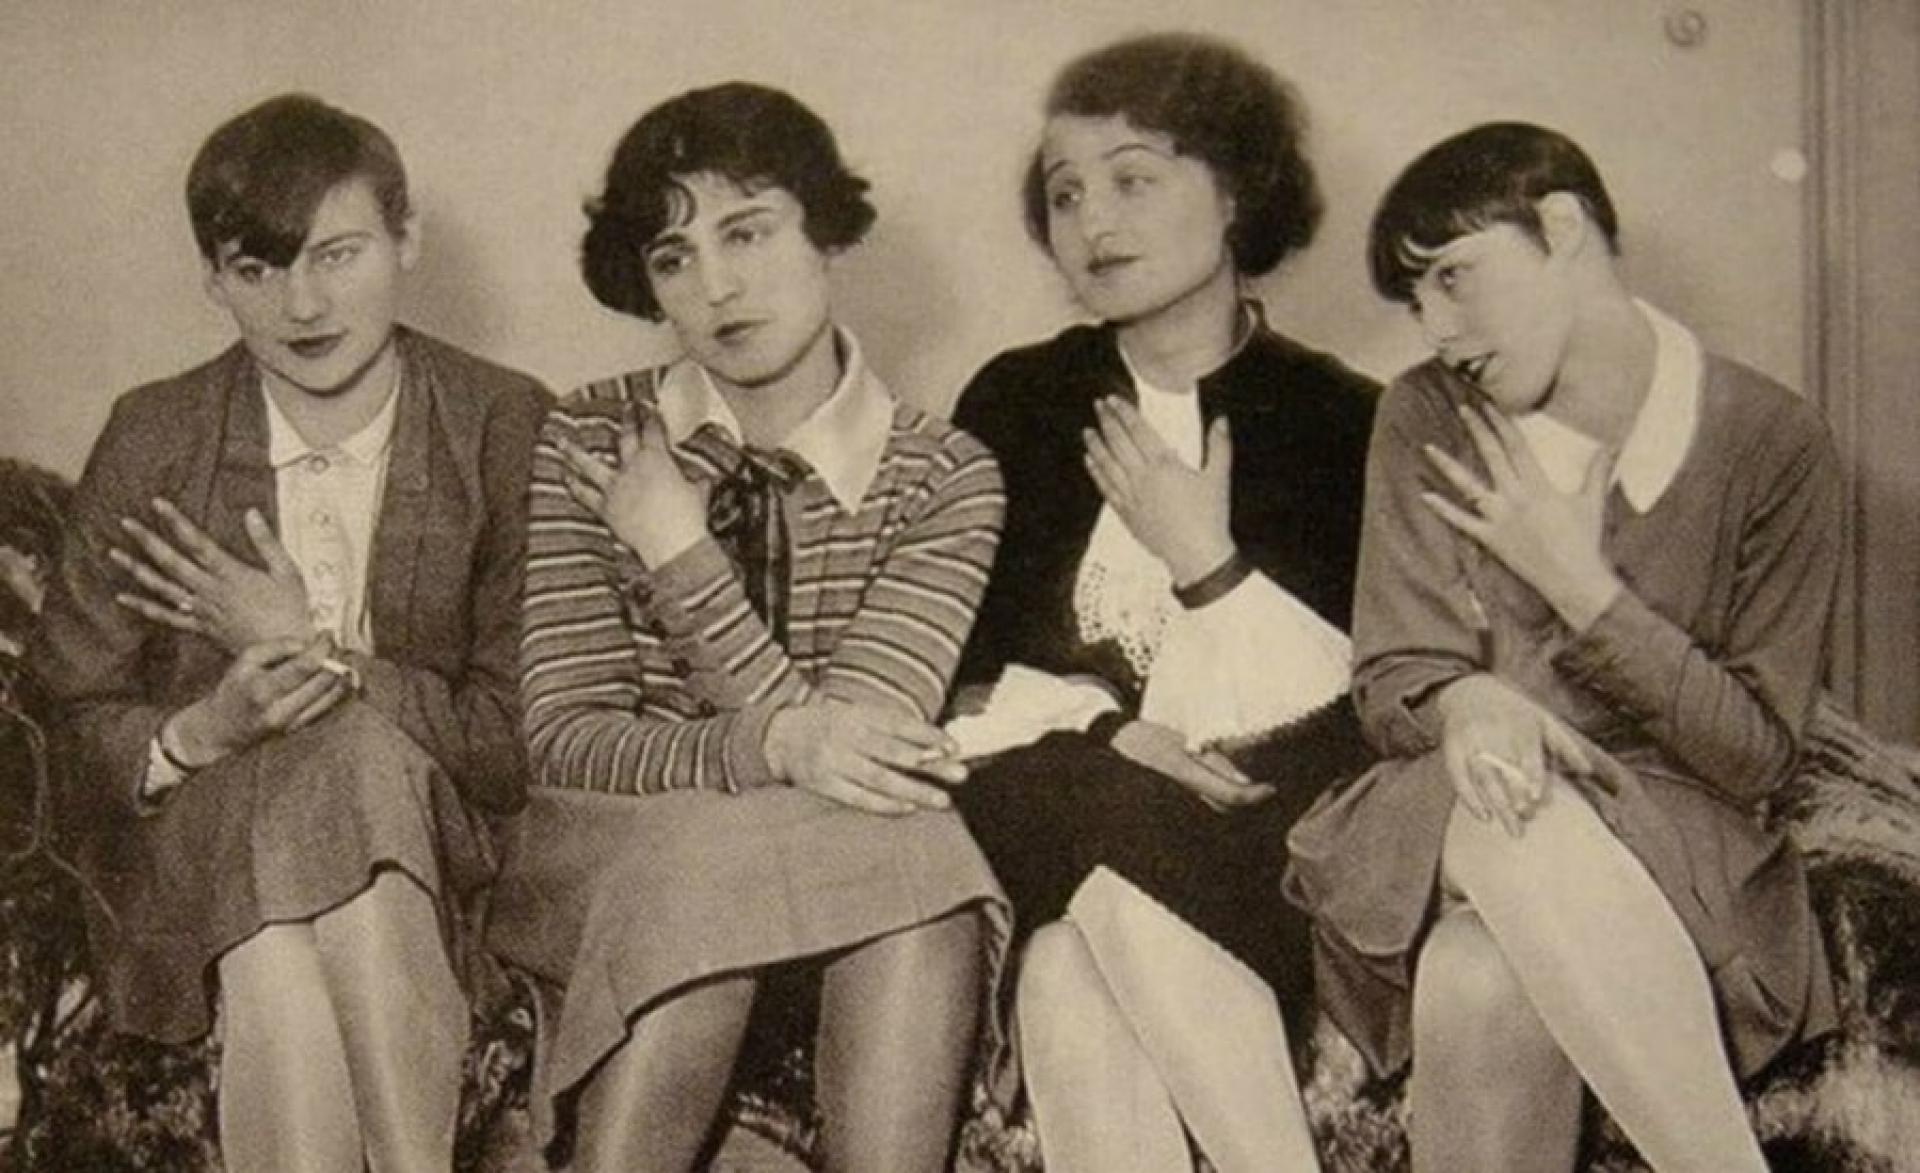 The modern women Alexa von Porewski, Lena Amsel, Rut Landshoff, unknown before 1929. | Photo by Umbo and Paul Citroen, Berlinische Galerie.